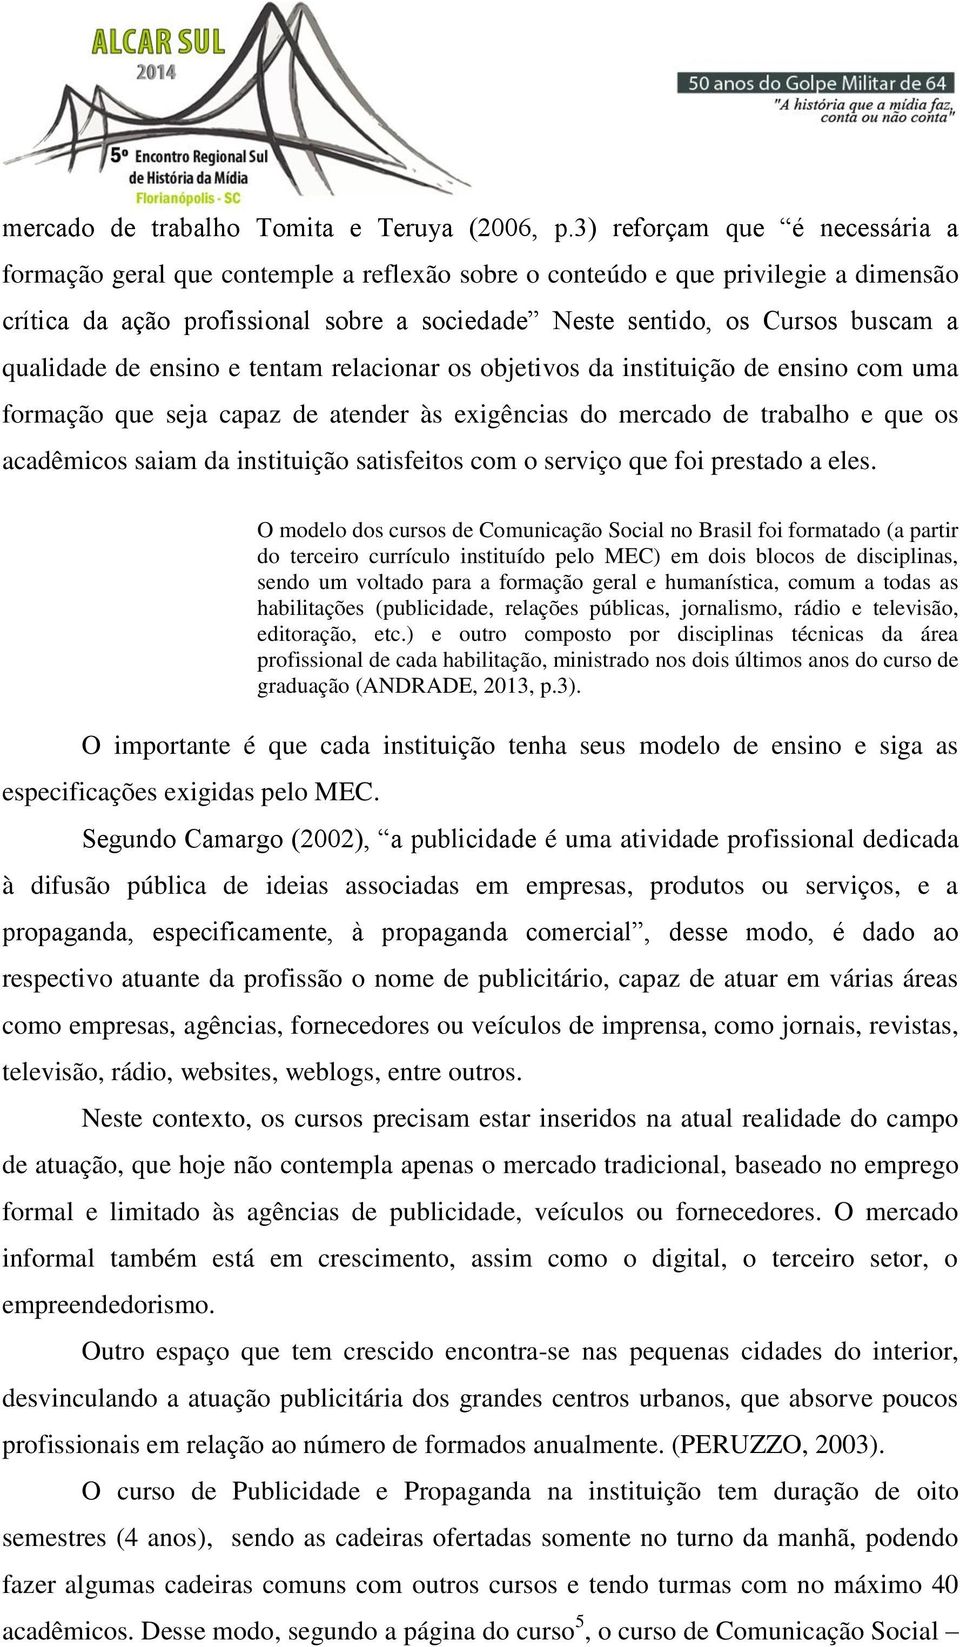 O modelo dos cursos de Comunicação Social no Brasil foi formatado (a partir do terceiro currículo instituído pelo MEC) em dois blocos de disciplinas, sendo um voltado para a formação geral e